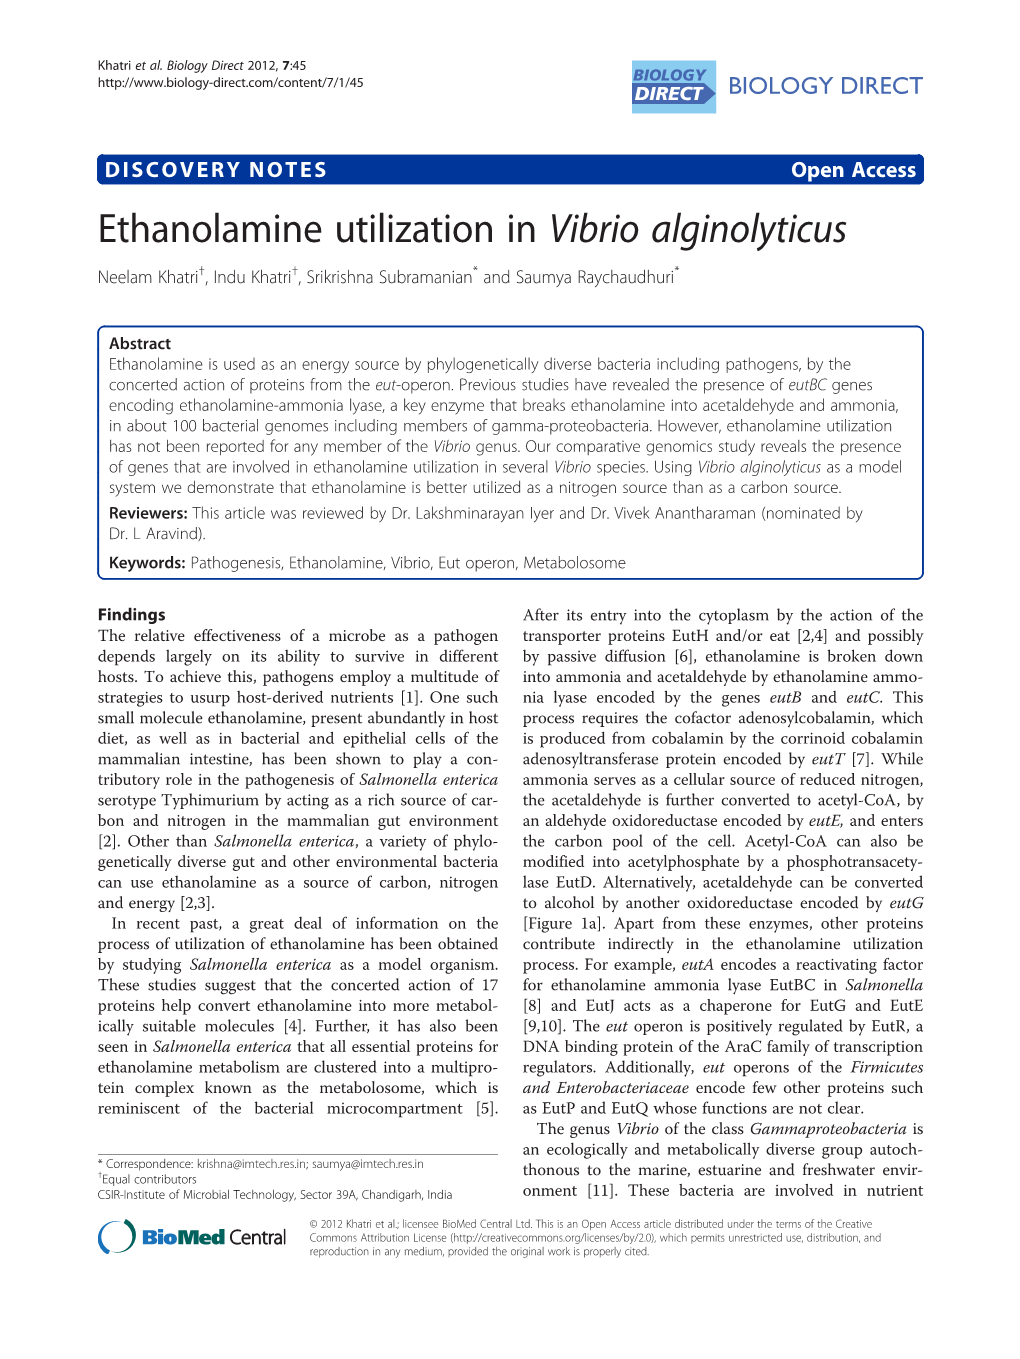 Ethanolamine Utilization in Vibrio Alginolyticus Neelam Khatri†, Indu Khatri†, Srikrishna Subramanian* and Saumya Raychaudhuri*